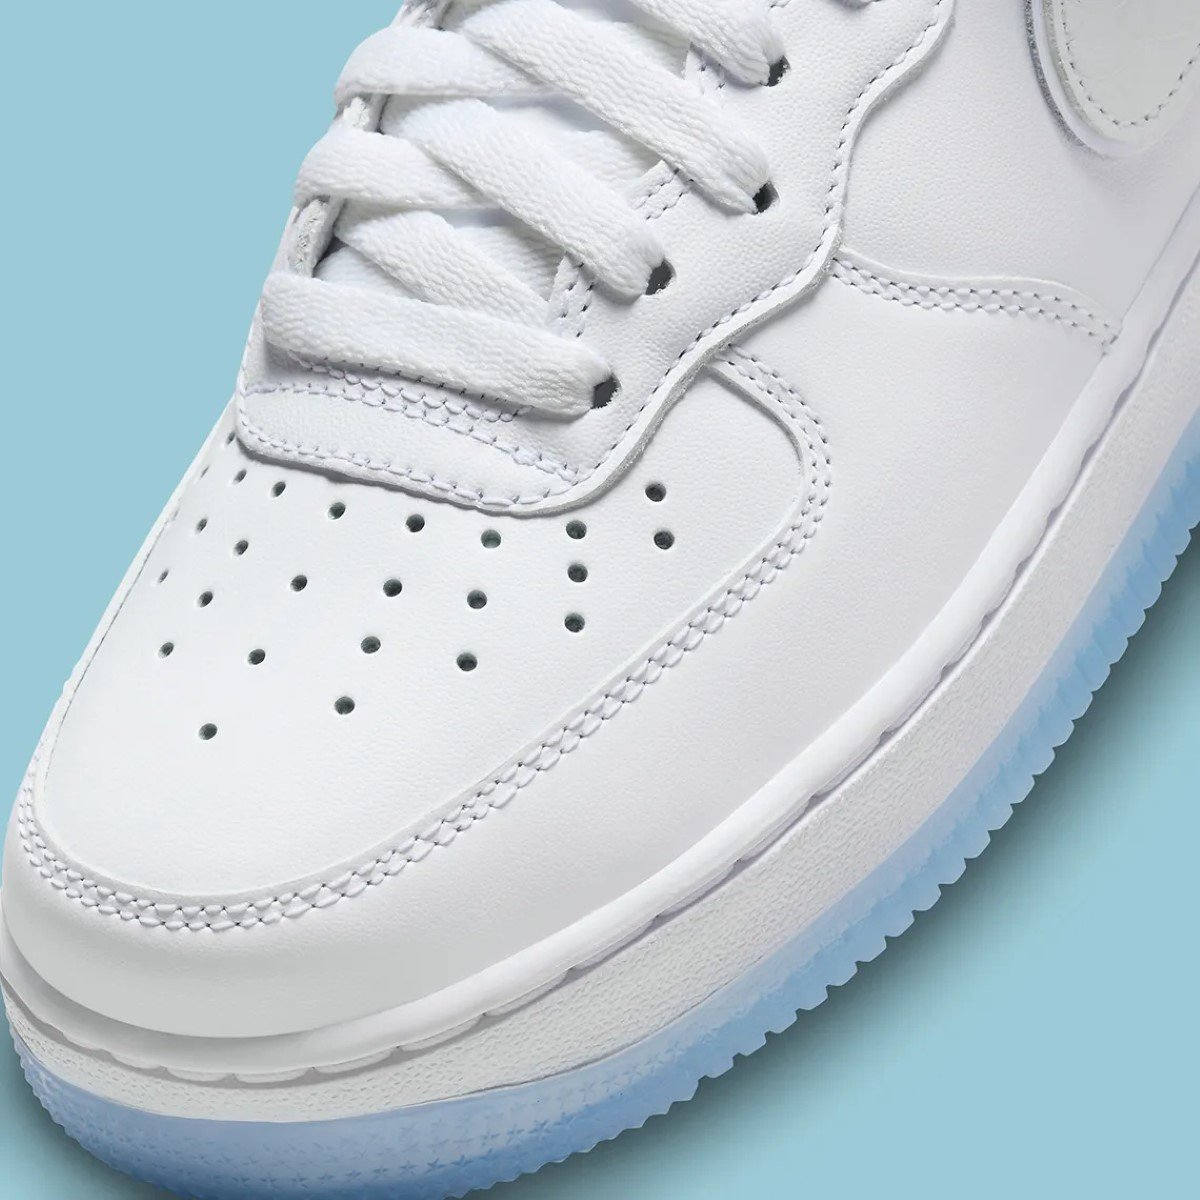 Le coloris "White Crocskin" renforce l'intemporalité de la Nike Air Force 1 Mid